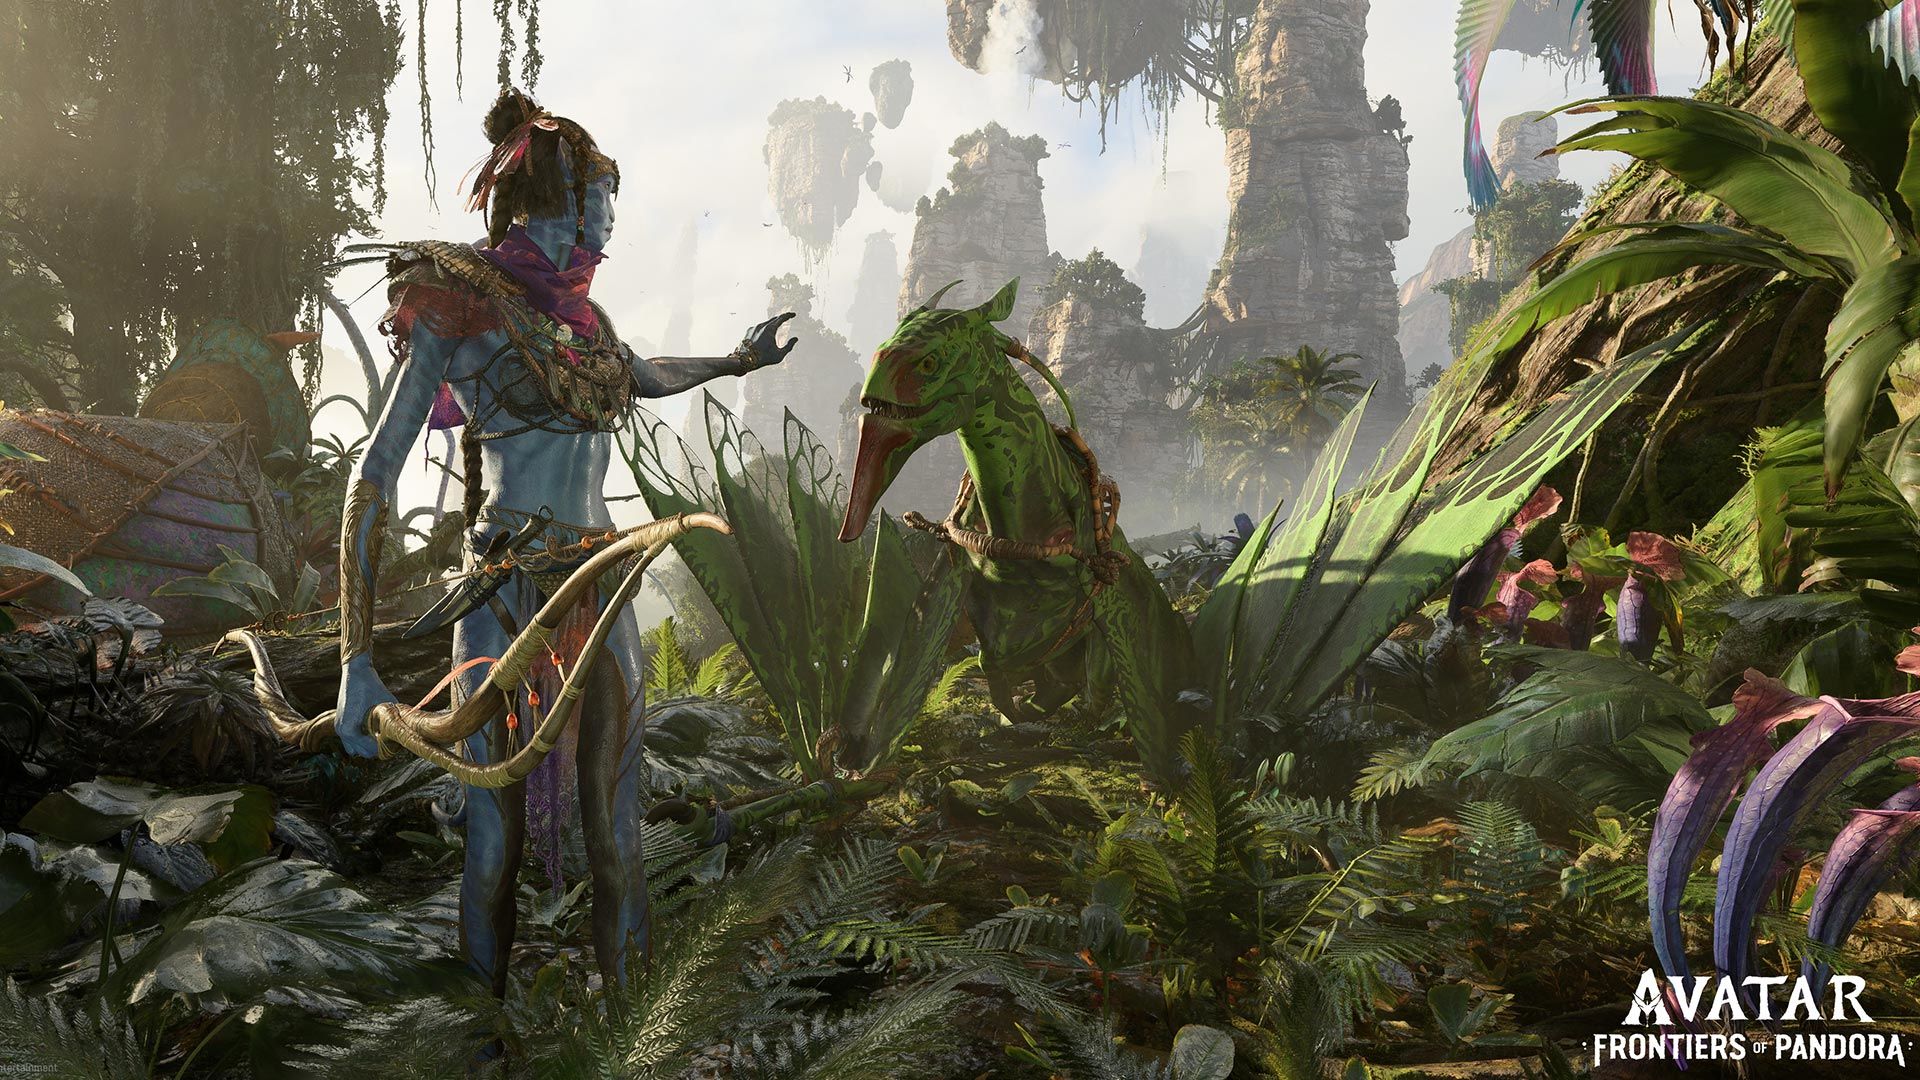 Công nghệ mới trên trò chơi Avatar: Frontiers of Pandora sẽ đem đến những trò chơi độc đáo, đầy bất ngờ và tạo ra những trải nghiệm mới mẻ khi bước vào thế giới hư cấu của Pandora, sẽ là một vòm đãi cảm xúc cho những người yêu thích điều phiêu lưu và khám phá.